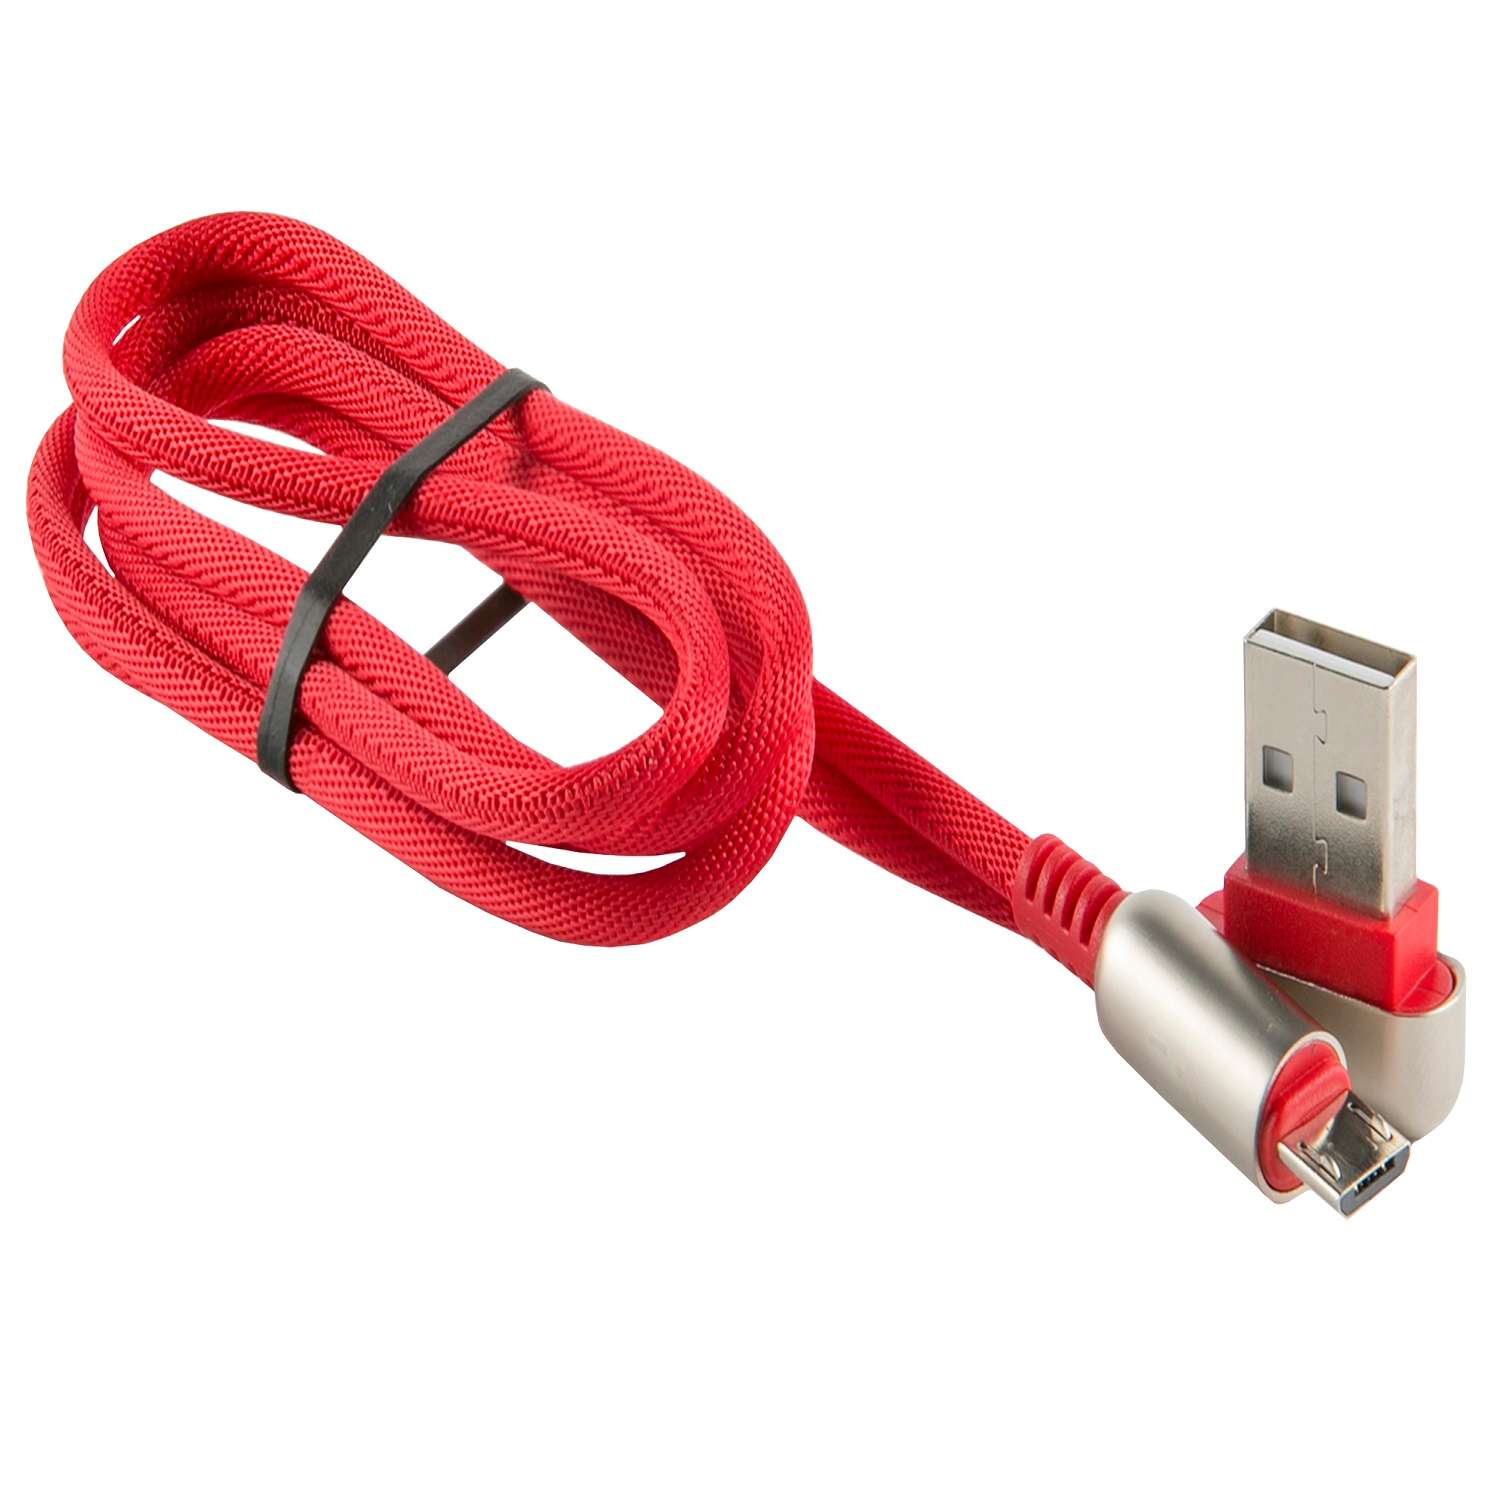 Кабель red line. Redline провод. Дата-кабель Redline led USB-Metabo. Дата-кабель Red line Spiral.